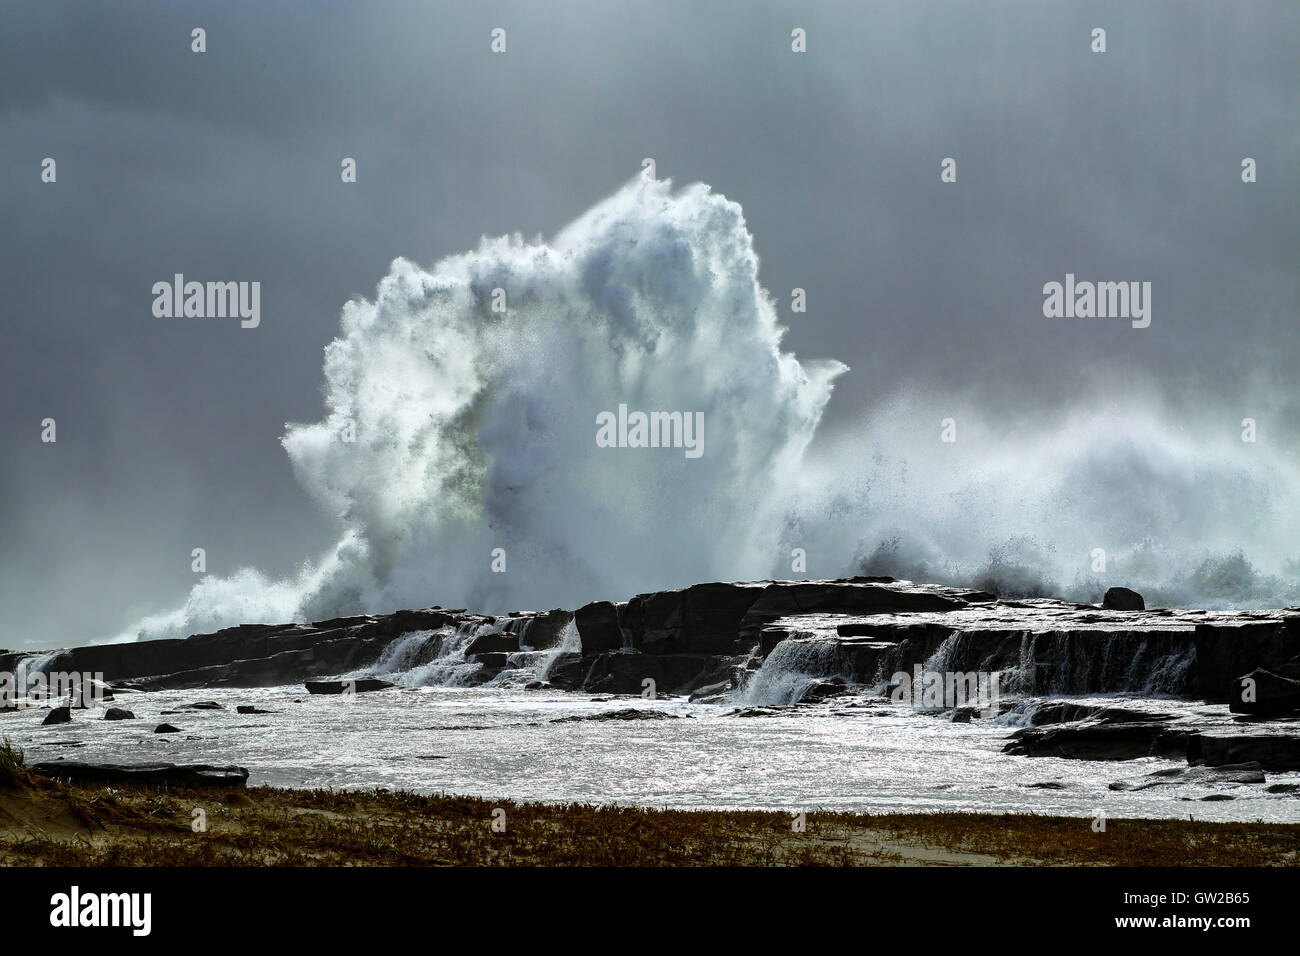 Une tempête hivernale whips de grandes et puissantes vagues qui s'écraser sur une plage, sous un ciel lourd. Banque D'Images